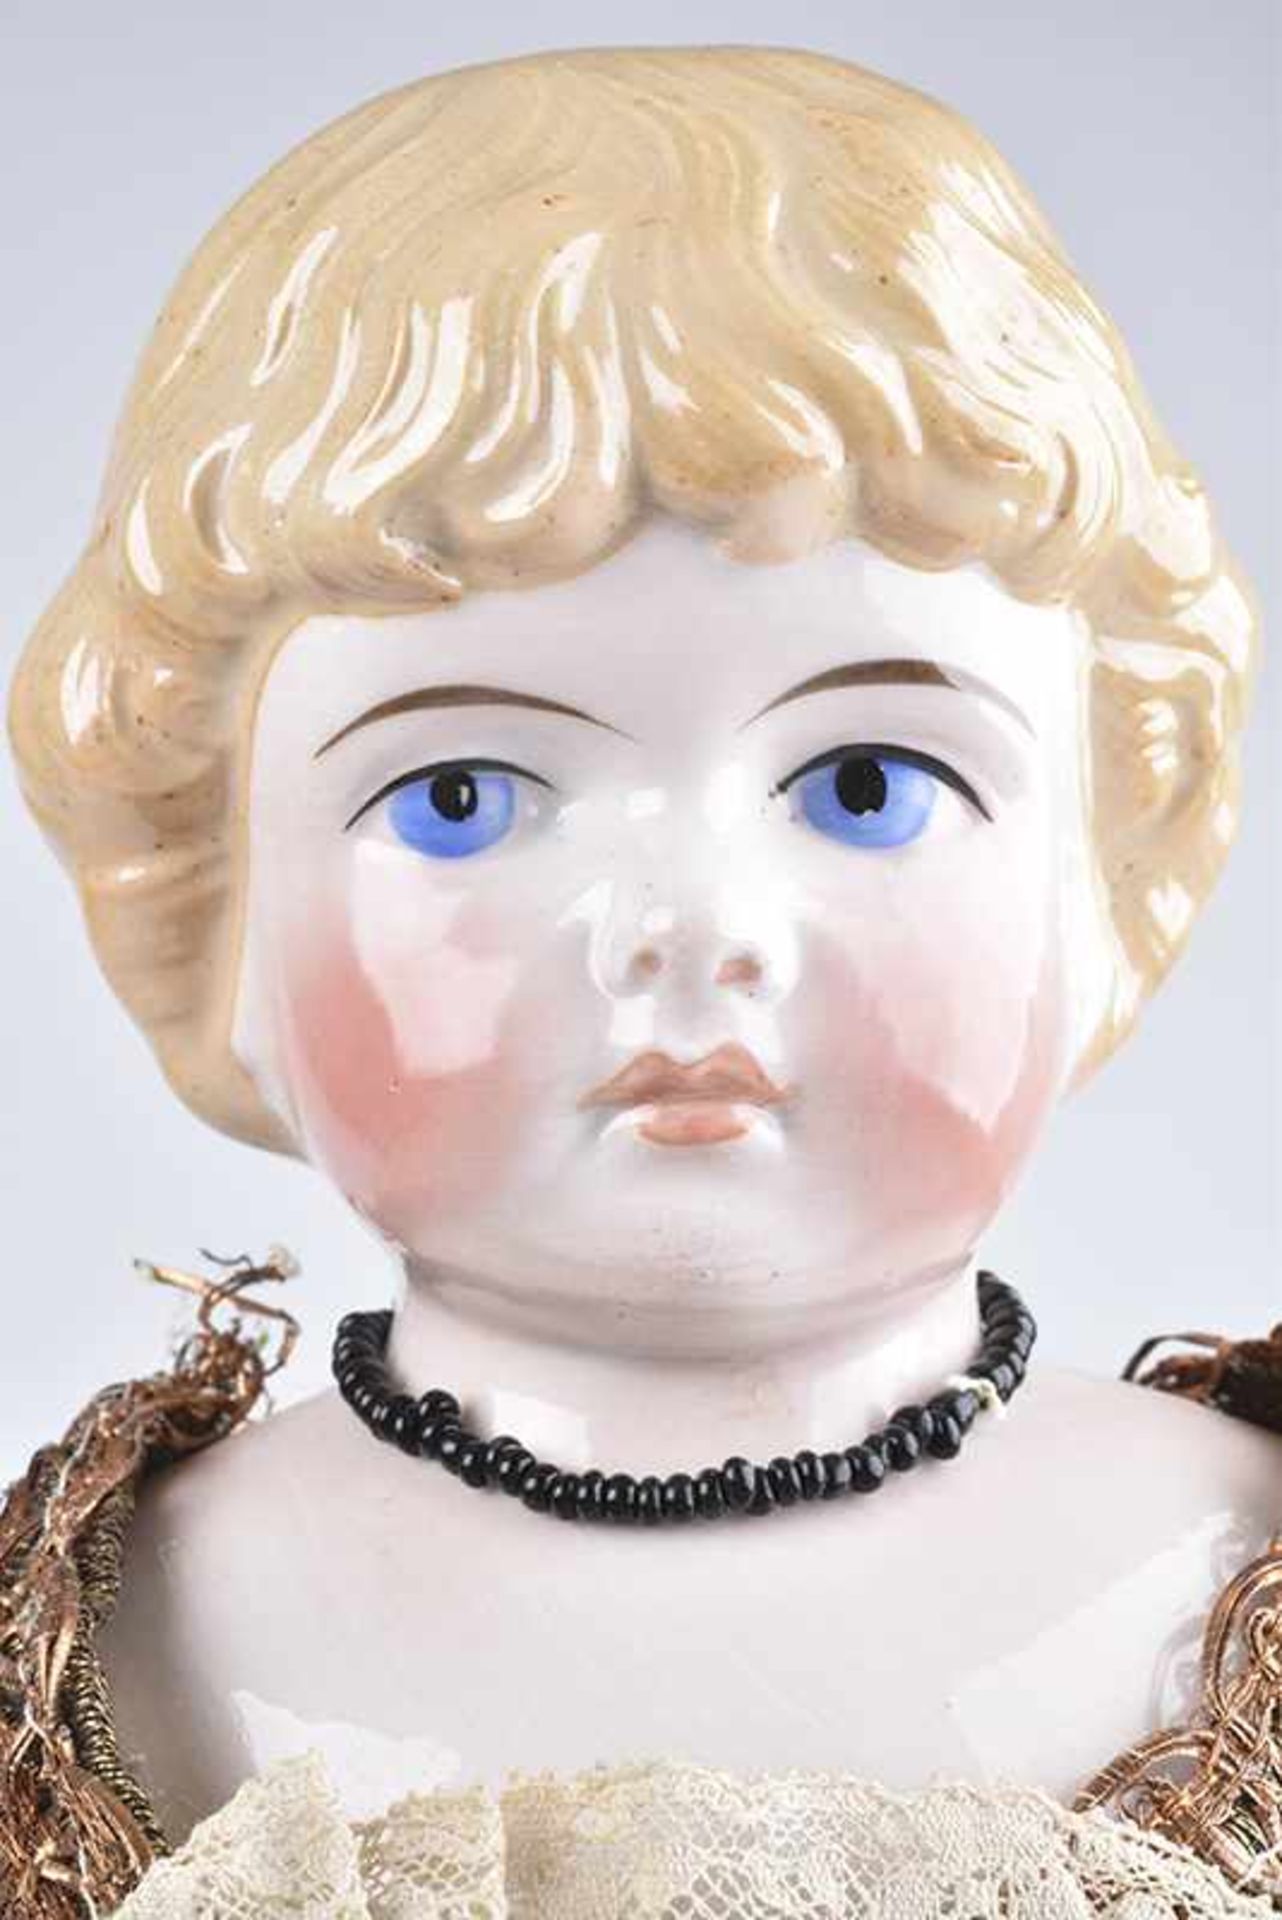 KLING Porzellan-Brustblattkopf-Puppe, gem. 1886- 6, glasiertes Porzellan, gemalte Augen, geschl. - Bild 2 aus 2